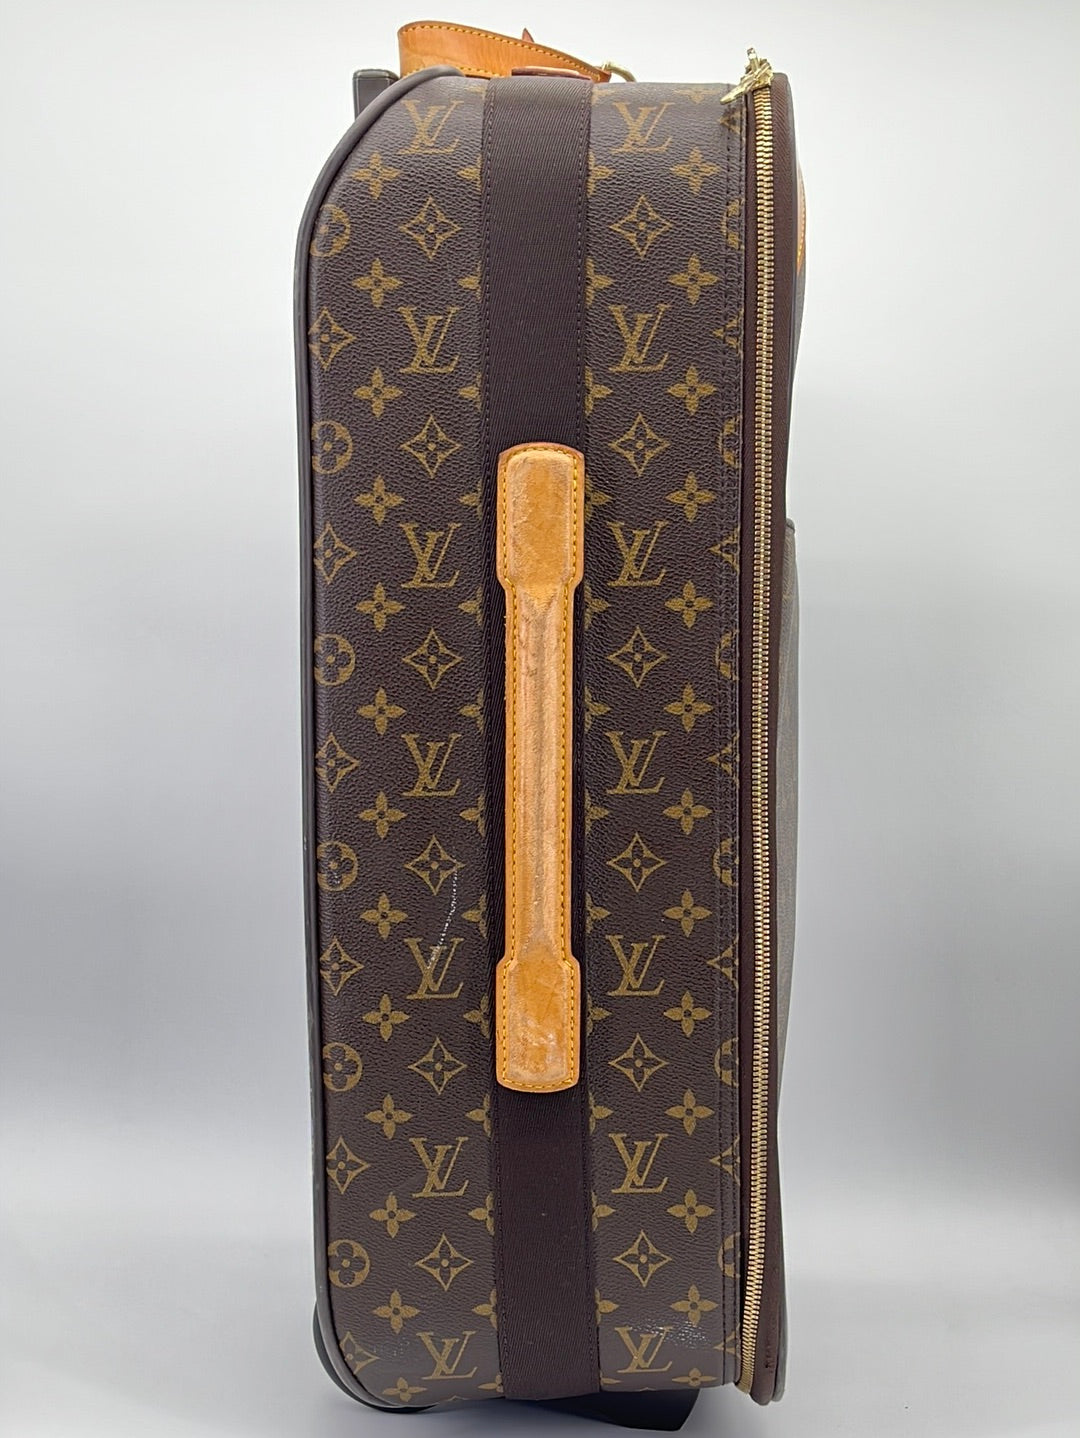 Suitcase Pegase 70 Louis Vuitton (Genuine) - PS Auction - We value